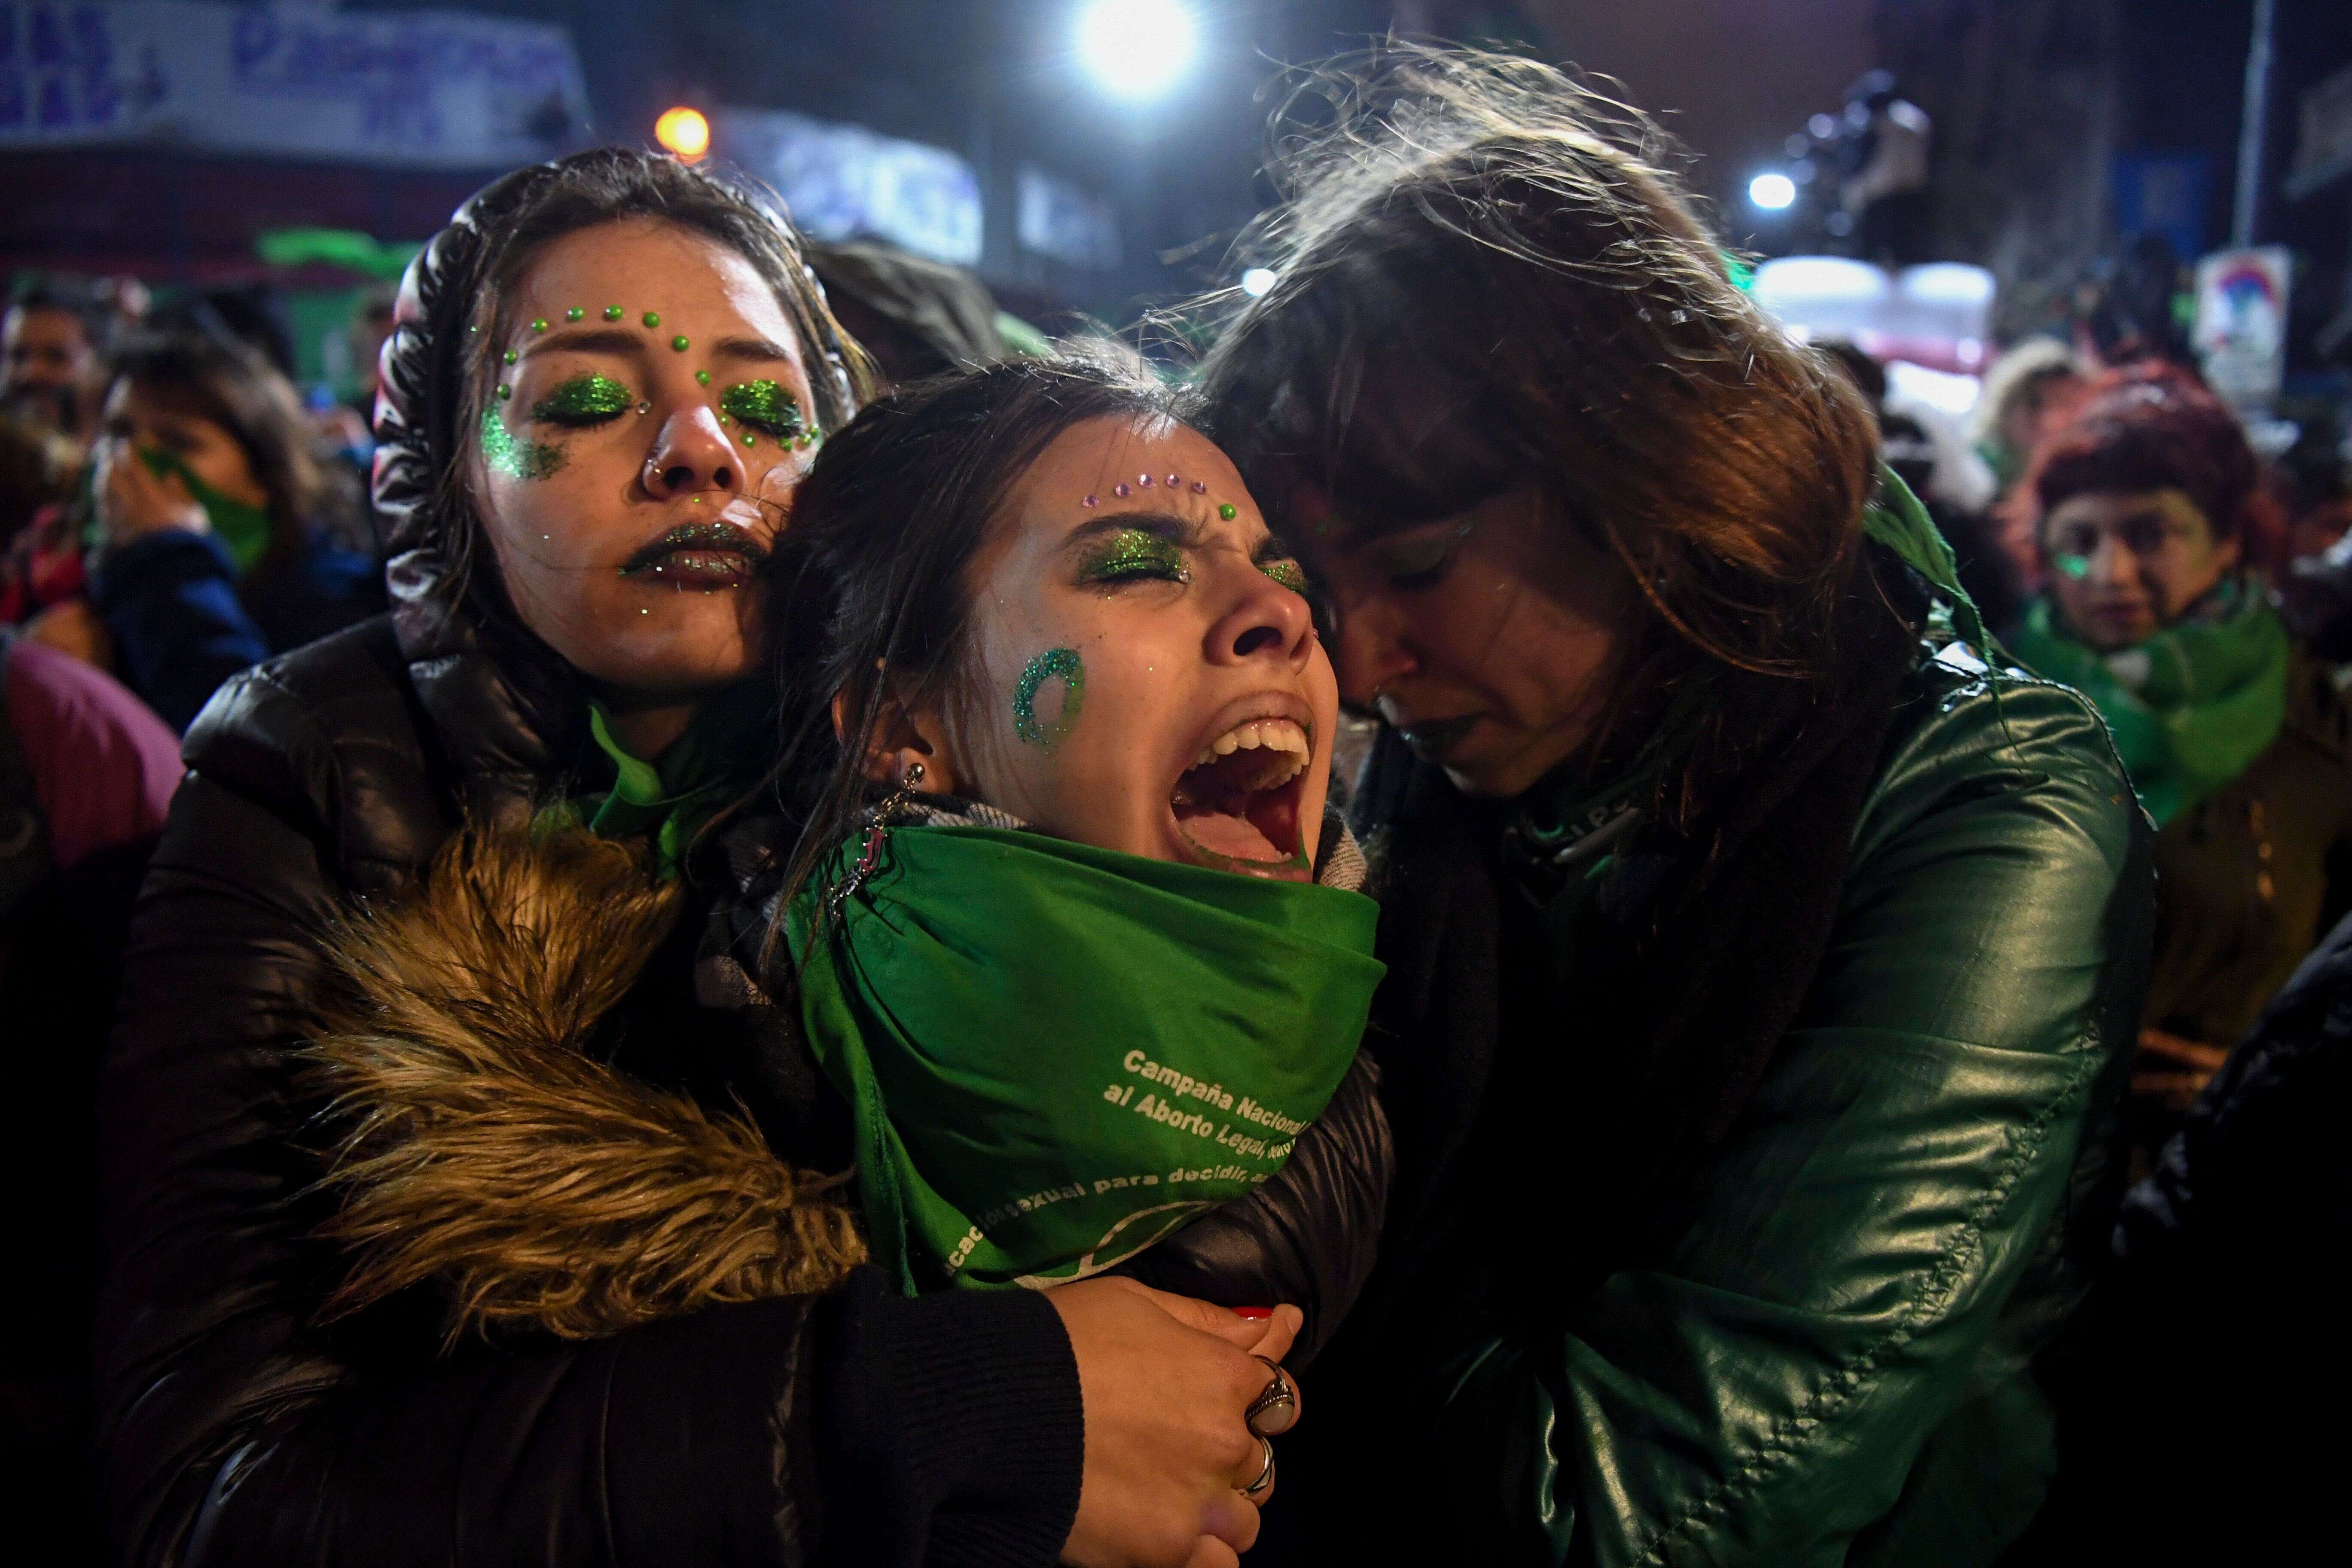 9 août - Des militants en faveur de la légalisation de l'avortement se réconfortent mutuellement devant le Congrès national de Buenos Aires, en Argentine, après que les sénateurs ont rejeté le projet de loi visant à légaliser l'avortement.